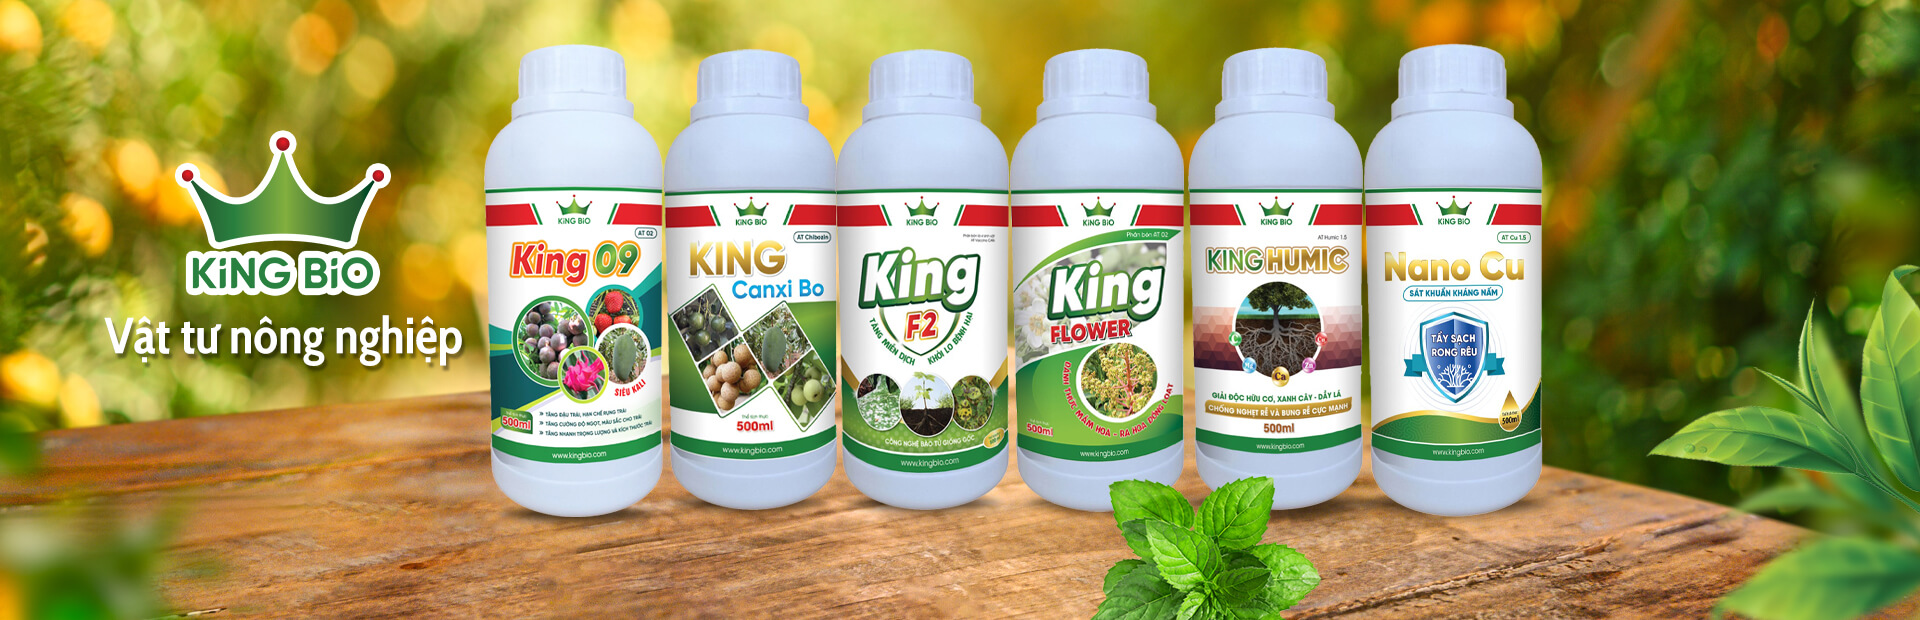 Công ty cổ phần tập đoàn KING BIO Phân thuốc sinh học cho cây trồng